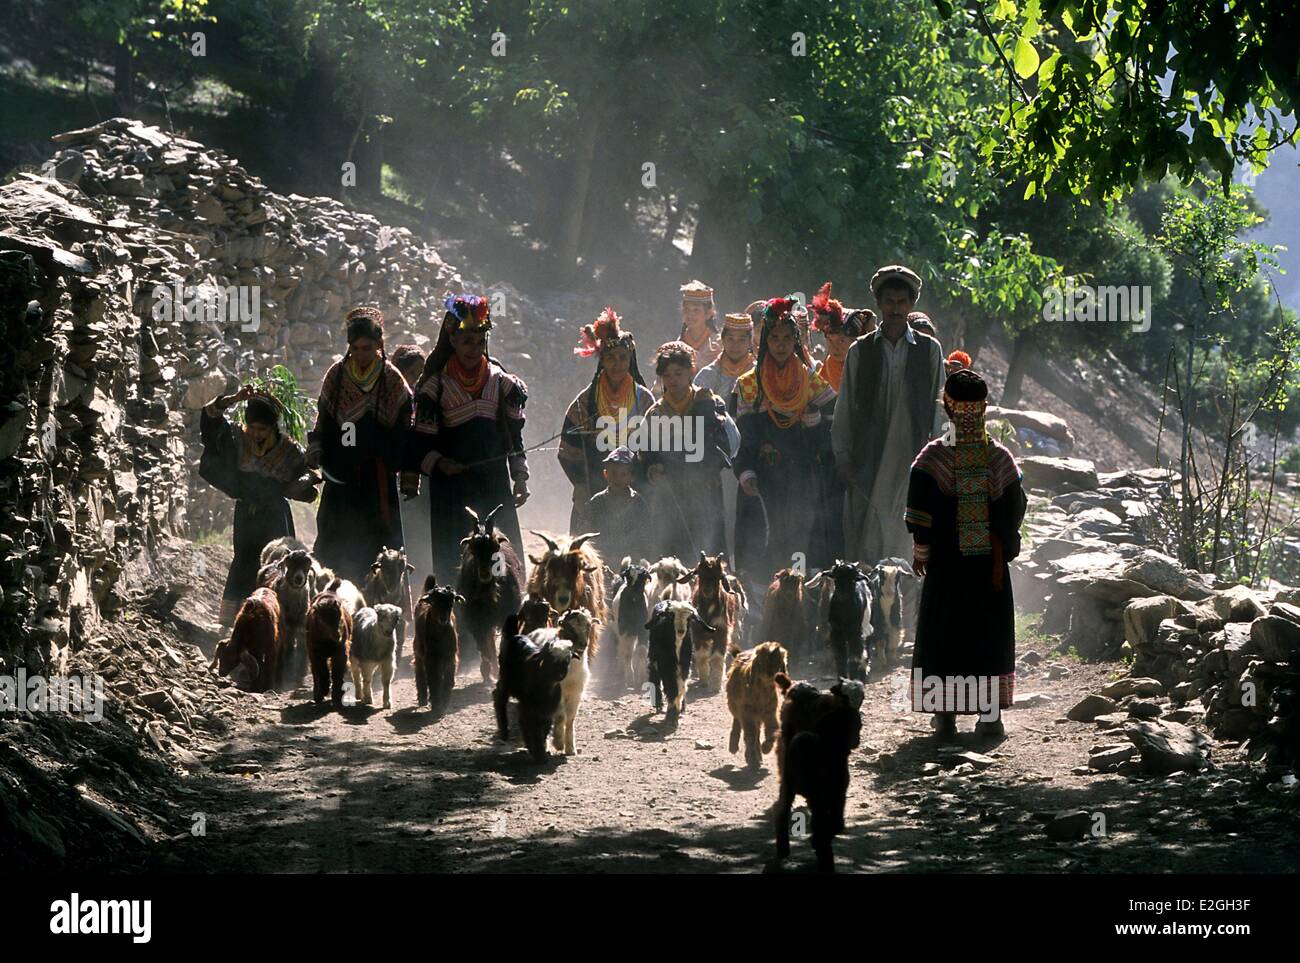 Vallées Kalash Khyber Pakhtunkhwa au Pakistan vallée Bumburet transhumance de chèvres avec toute la famille juste après les célébrations de Joshi spring festival seul jour de l'année où les femmes Kalash sont autorisés à rejoindre les lieux sacrés et pure de pâturages où vivent les fées Banque D'Images